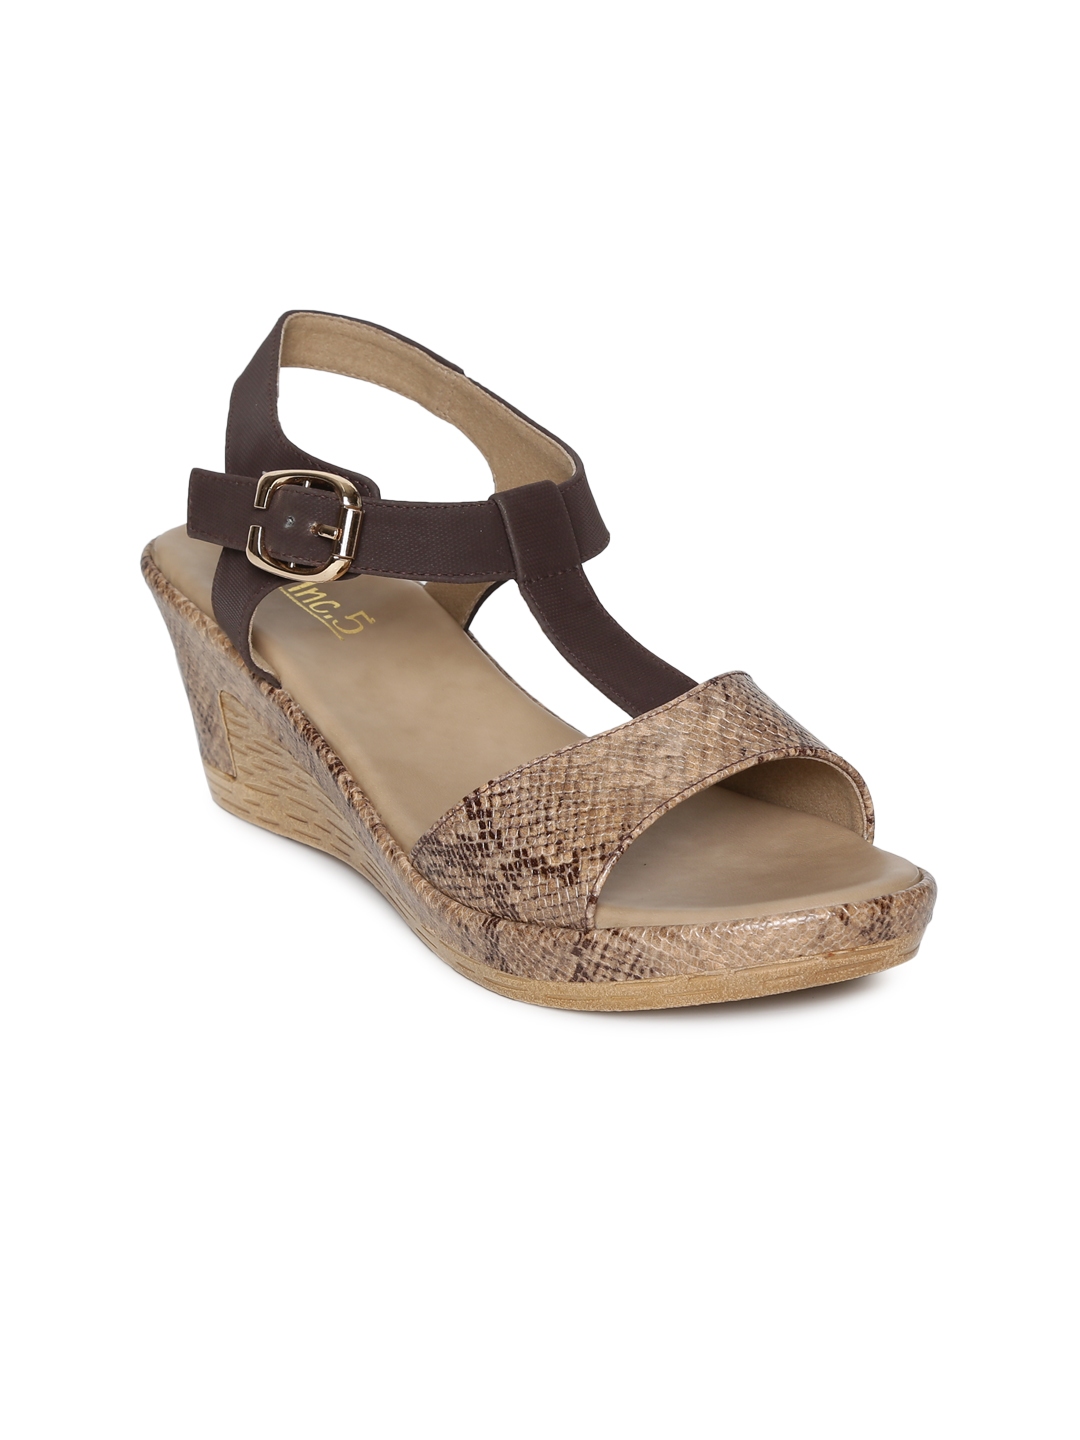 Buy Inc 5 Women Brown Solid Sandals - Heels for Women 4943958 | Myntra